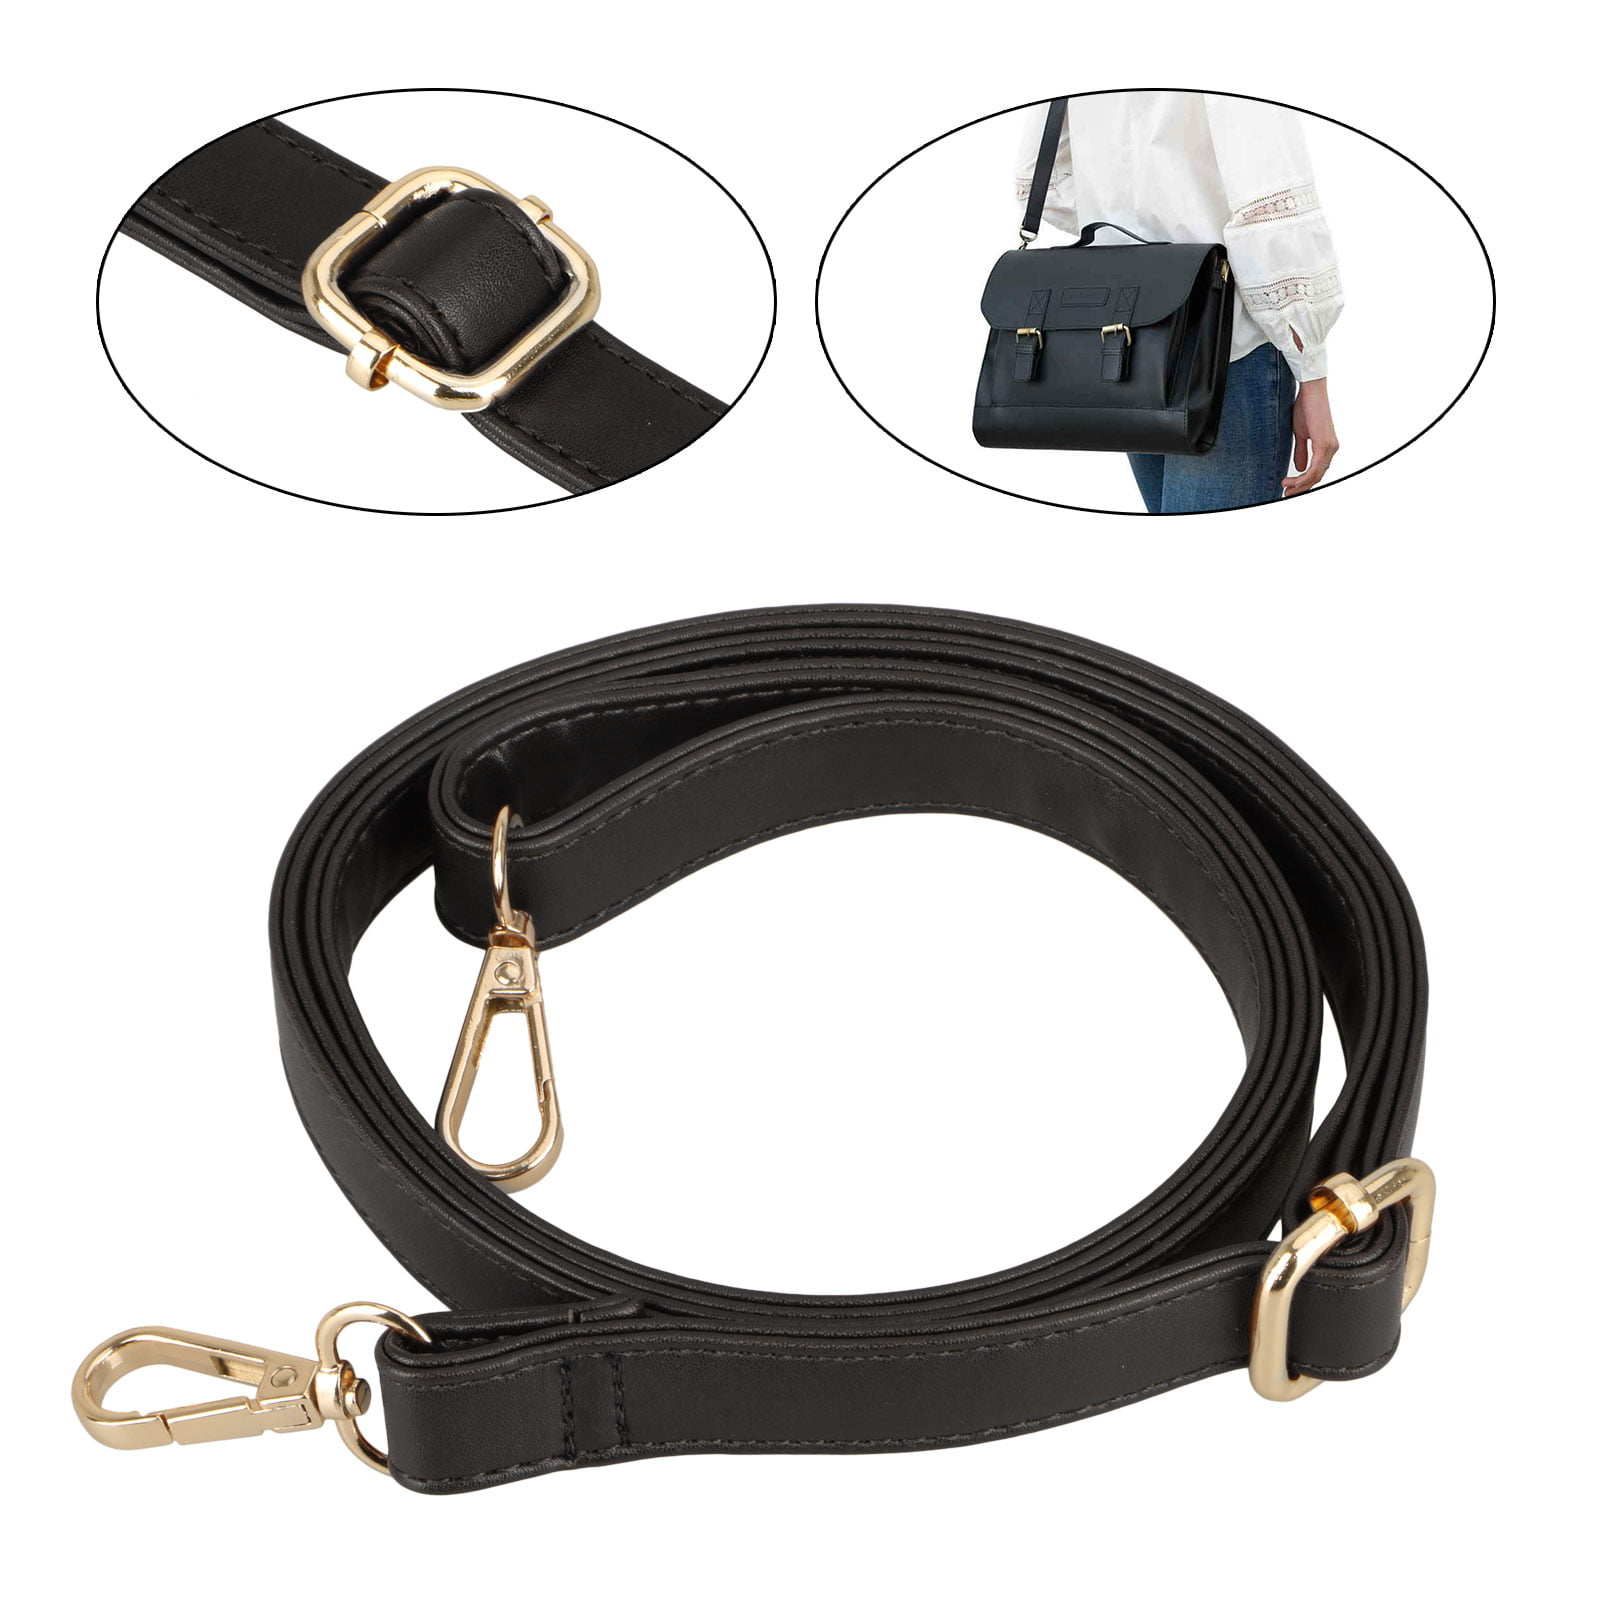 Replacement Bag Strap Purse Leather Crossbody Handbag Wallet Bag Belt Adjustable